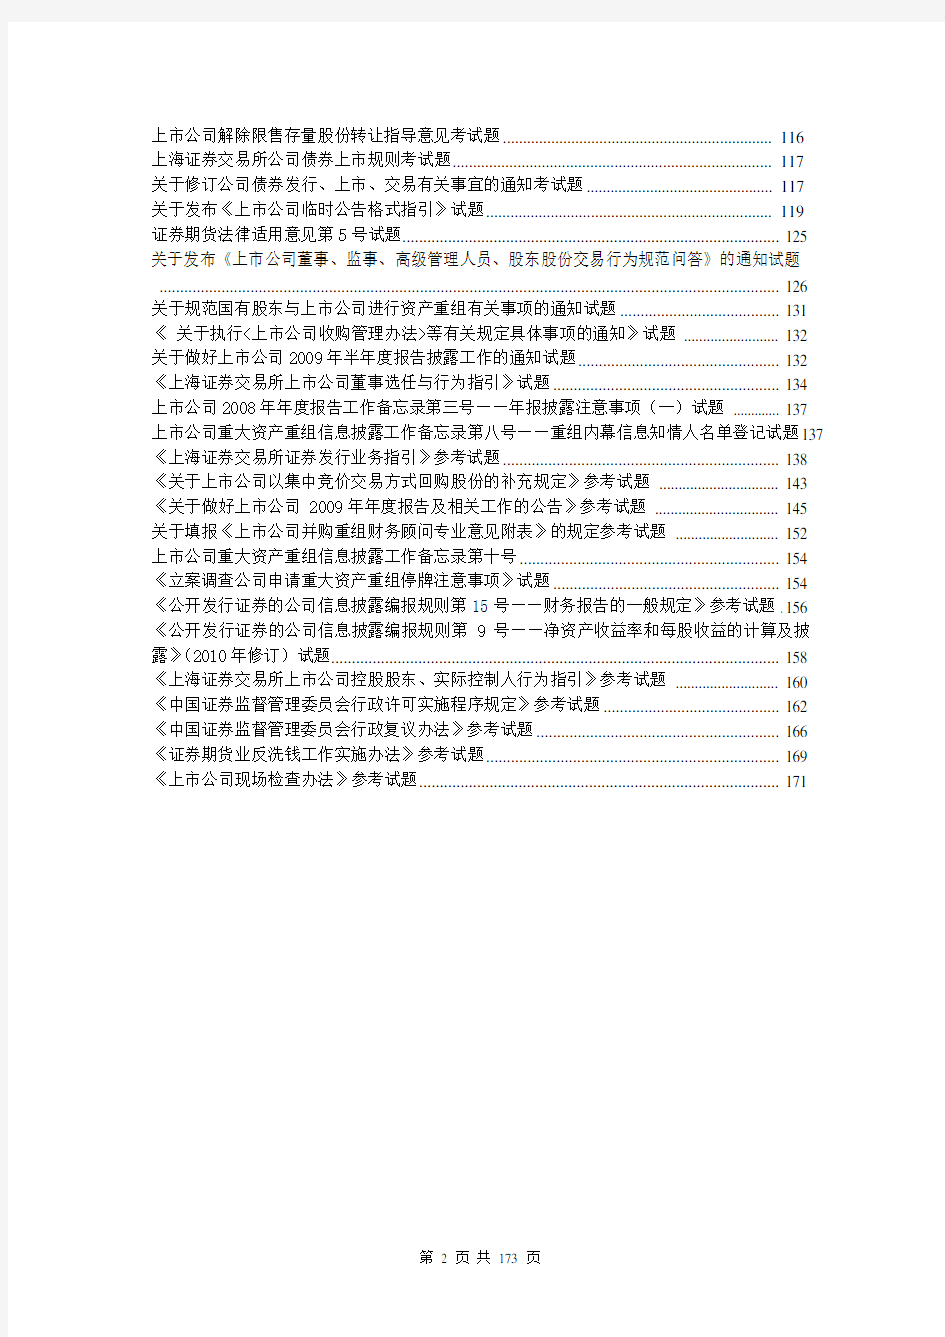 上海证券交易所董事会秘书资格考试题库和答案 完整版